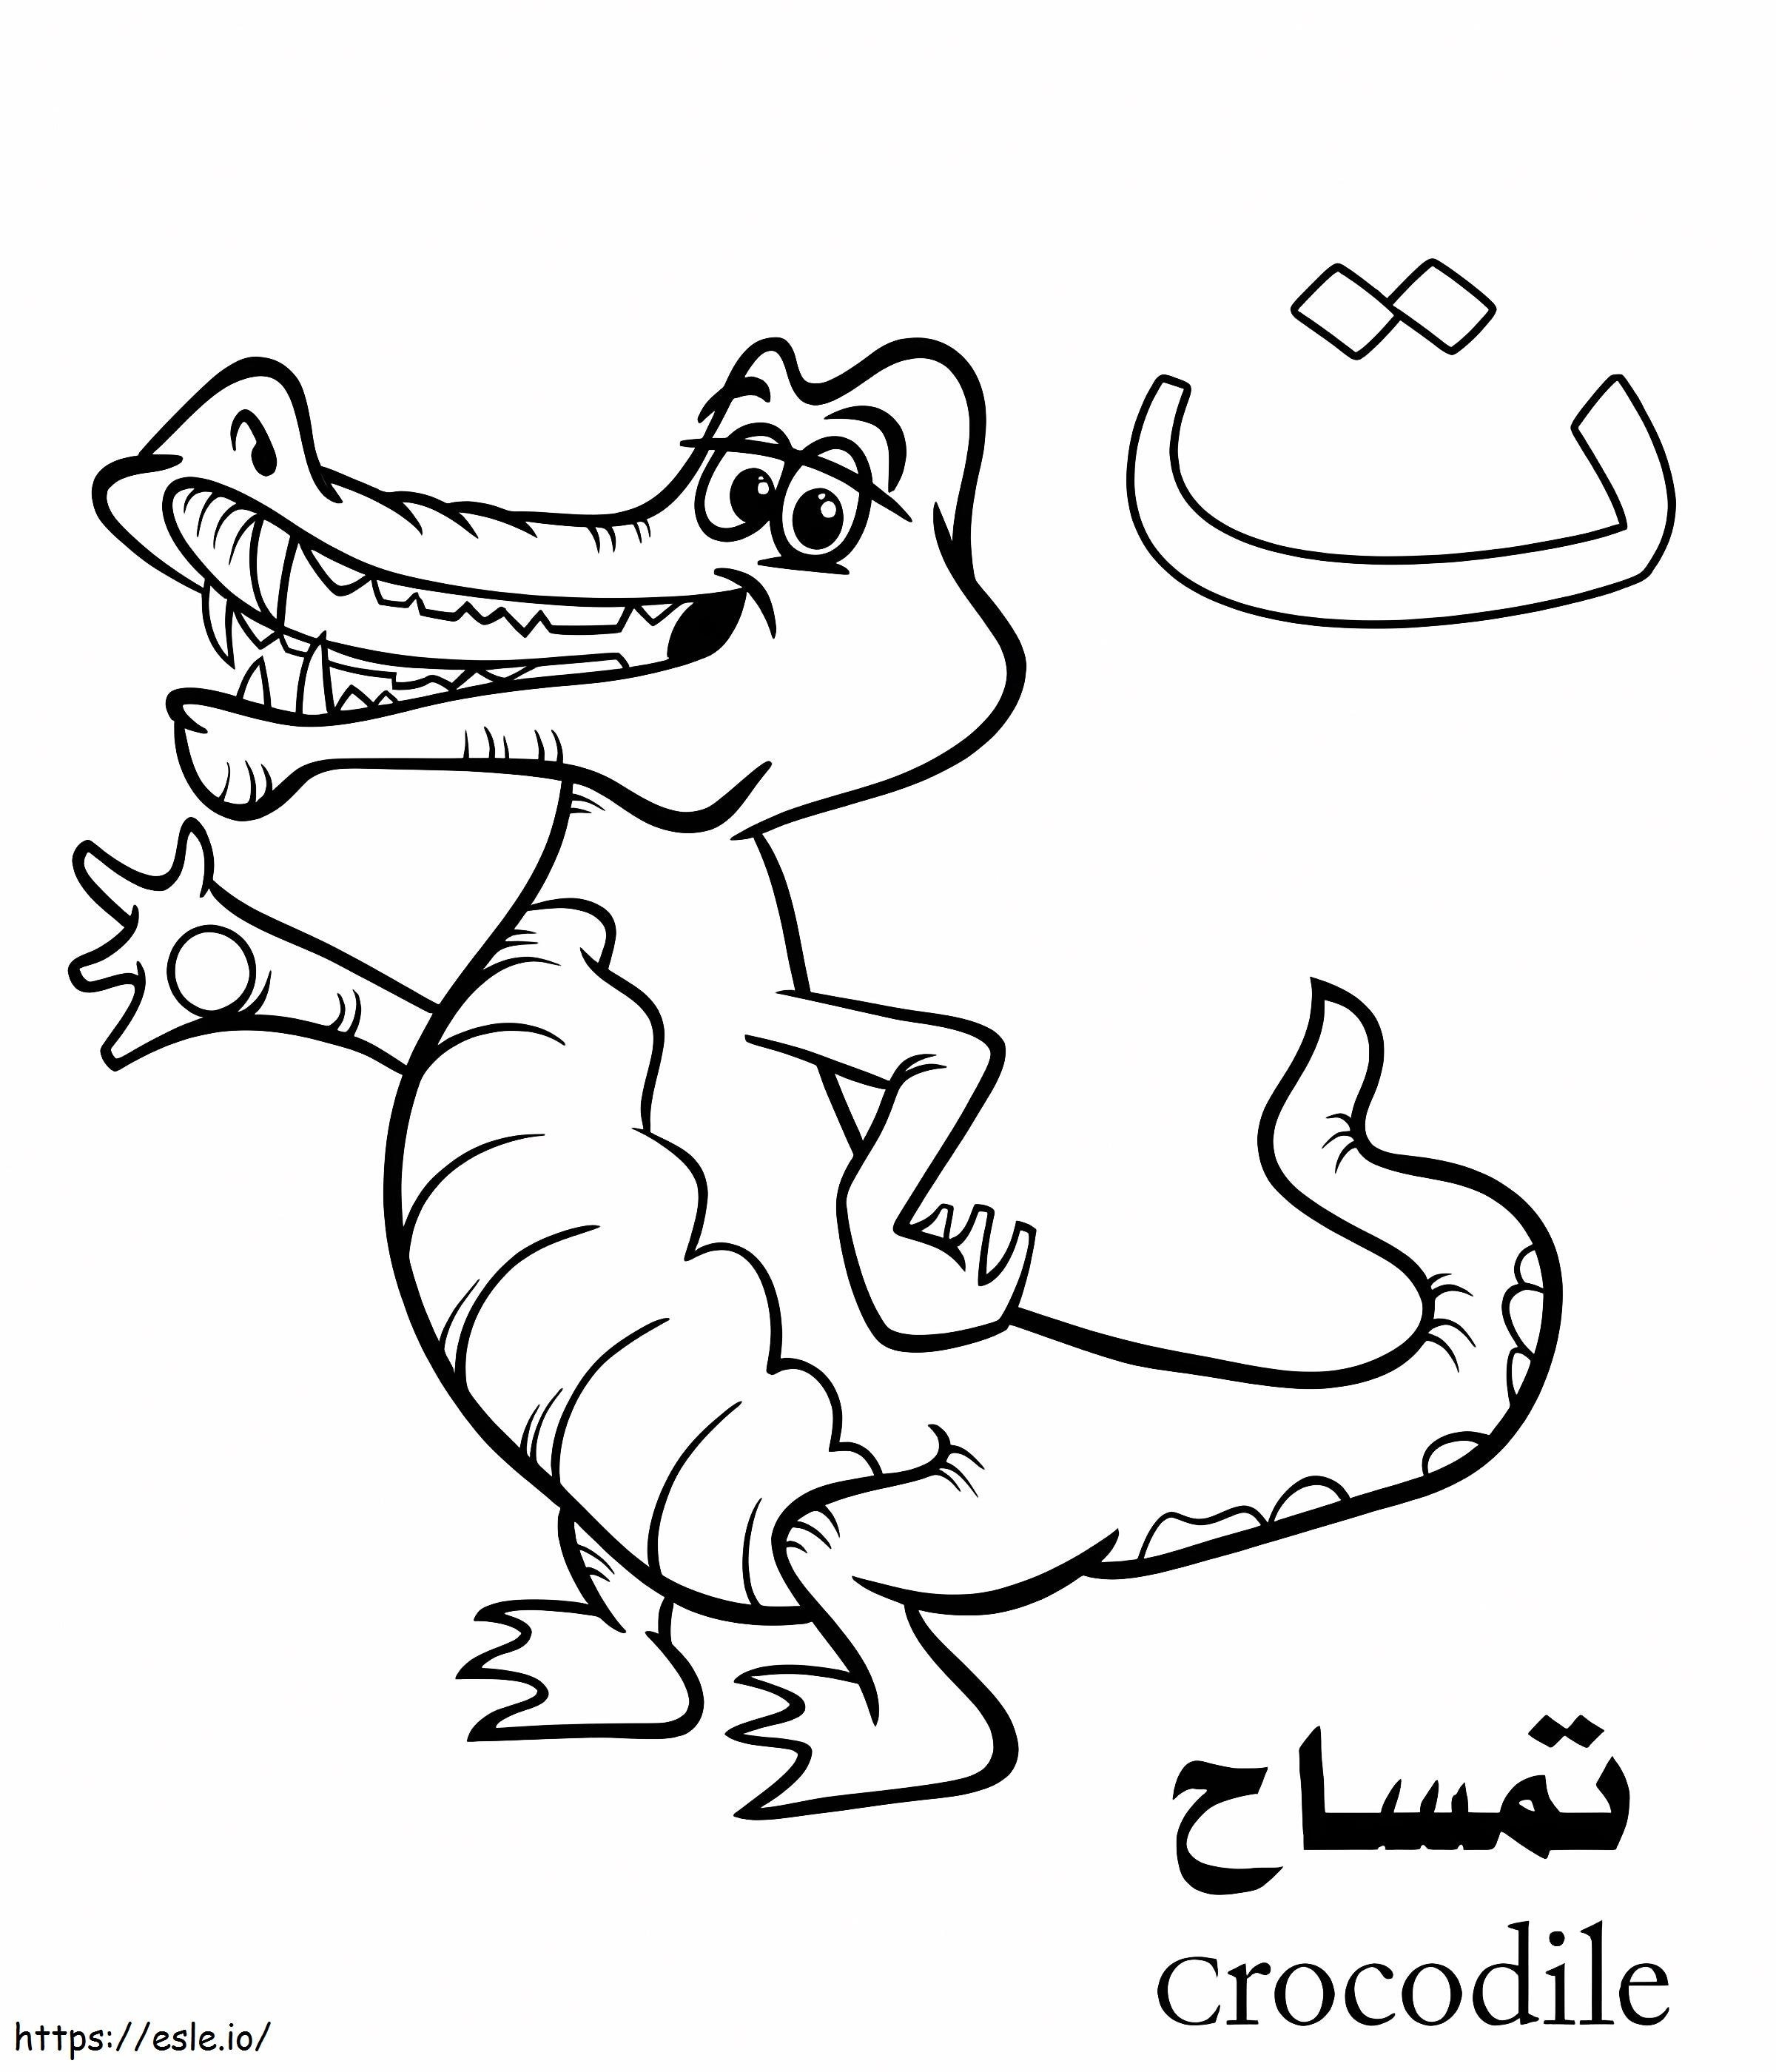 Arabisches Krokodil-Alphabet ausmalbilder